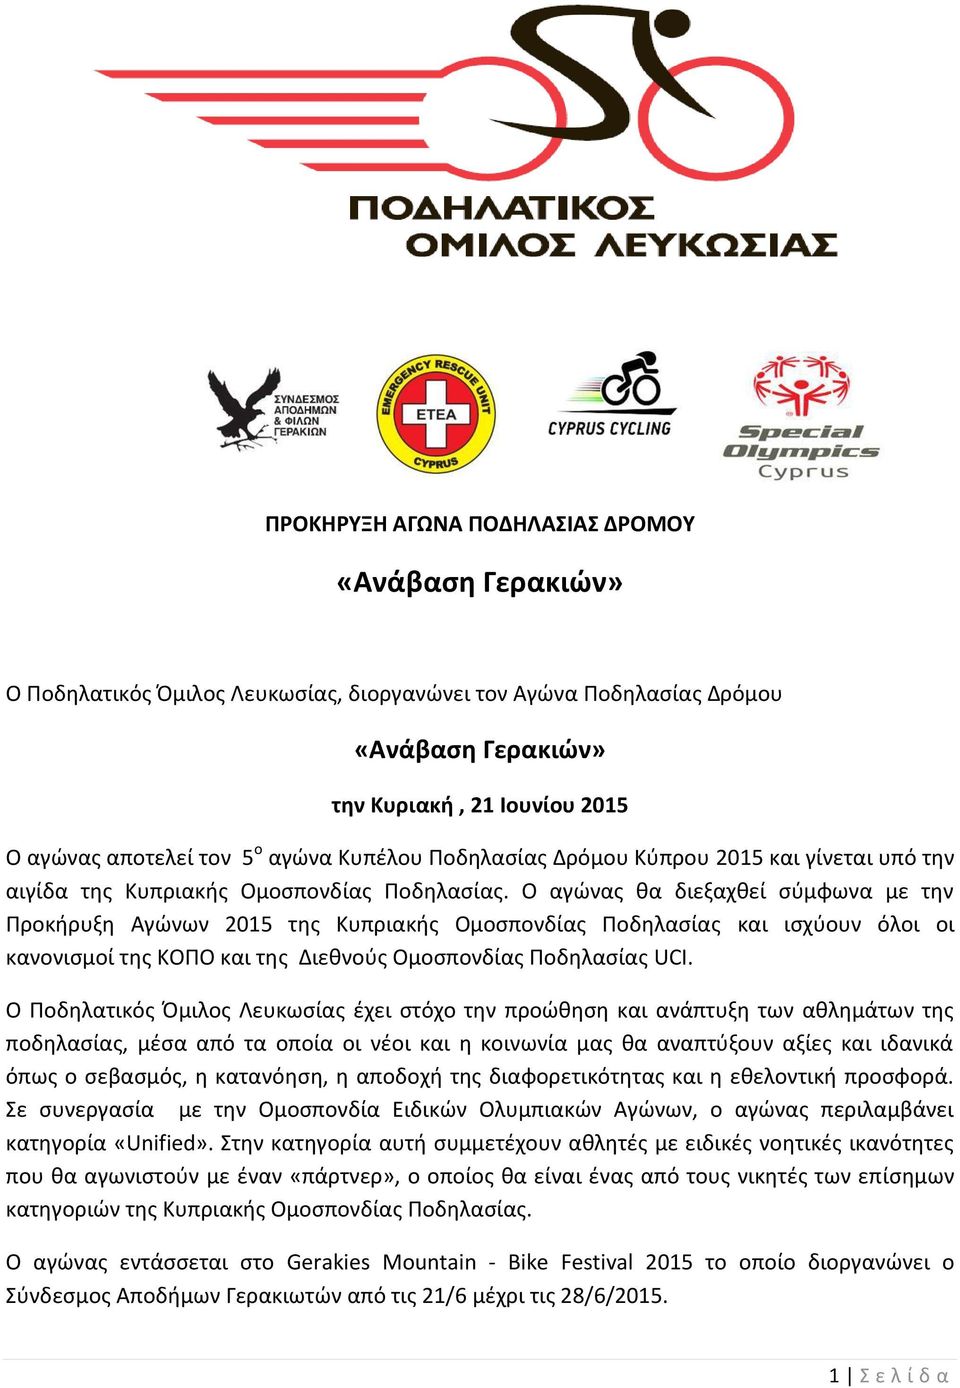 Ο αγώνας θα διεξαχθεί σύμφωνα με την Προκήρυξη Αγώνων 2015 της Κυπριακής Ομοσπονδίας Ποδηλασίας και ισχύουν όλοι οι κανονισμοί της ΚΟΠΟ και της Διεθνούς Ομοσπονδίας Ποδηλασίας UCI.